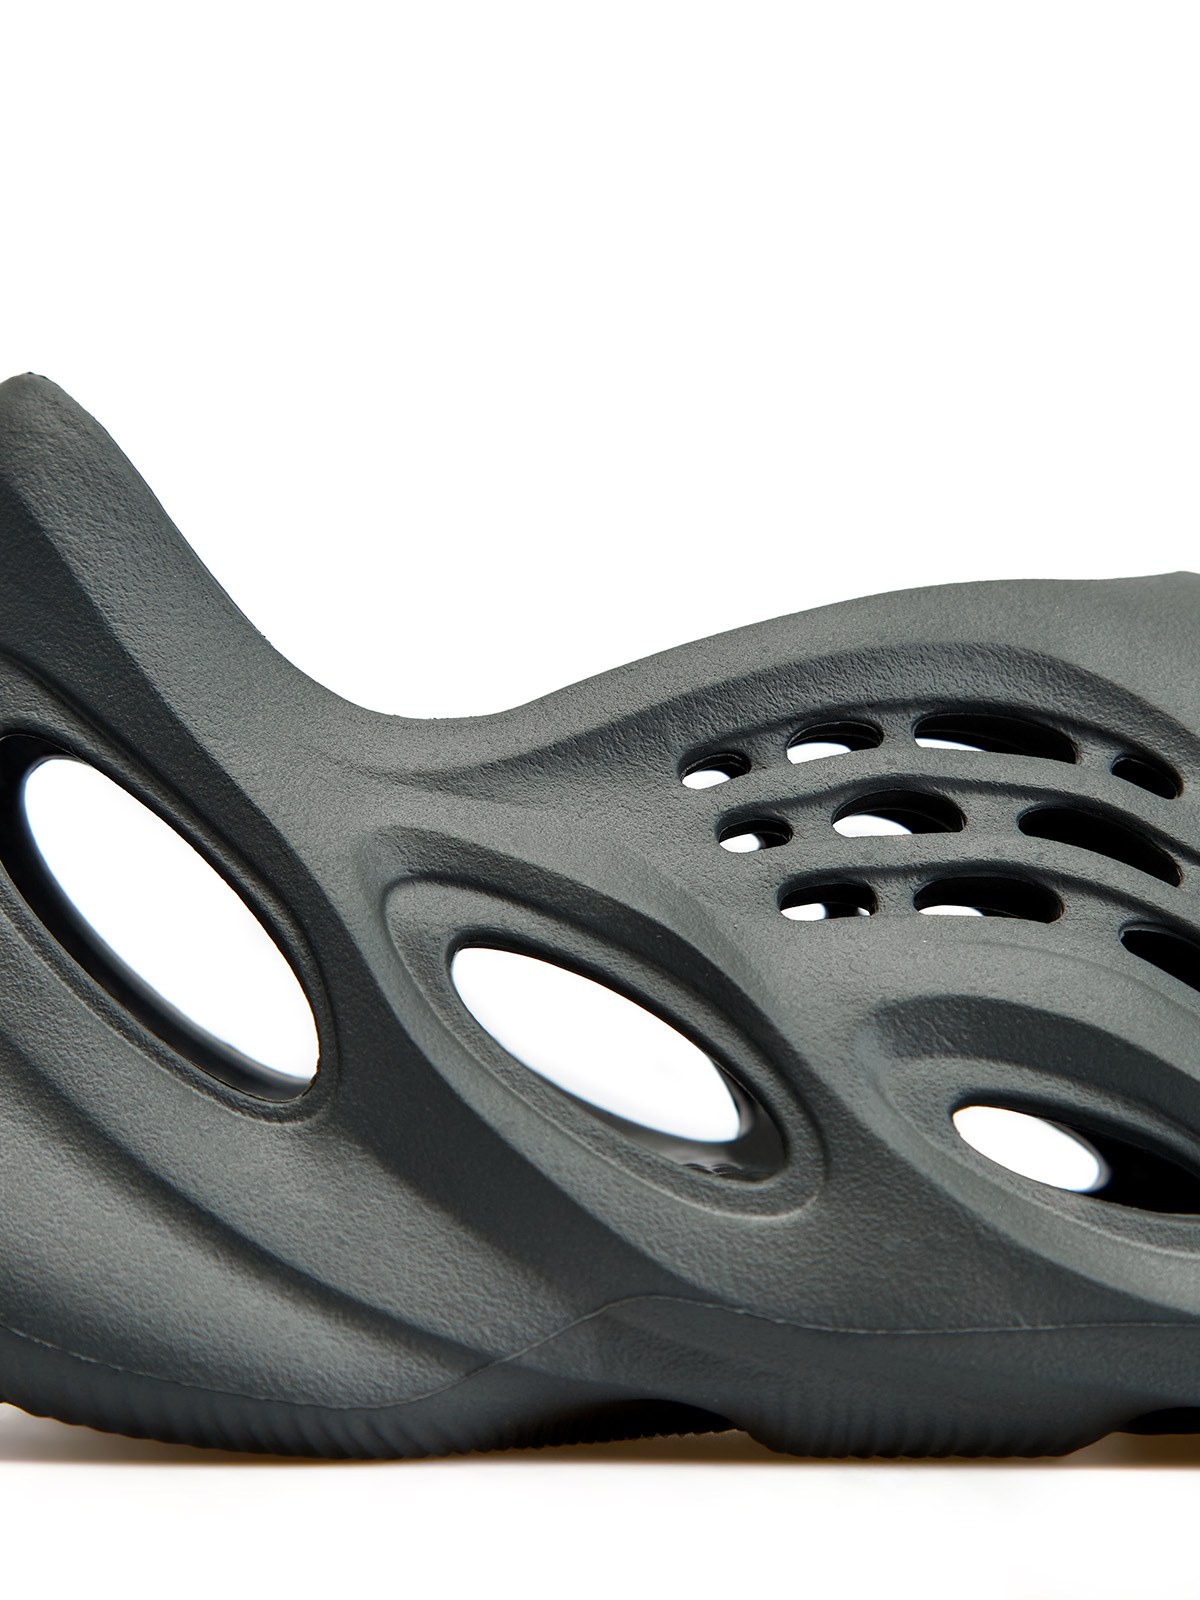 Кроссовки Yeezy Foam Runner 'Carbon' Yeezy, цвет черный, размер 40.5 - фото 4